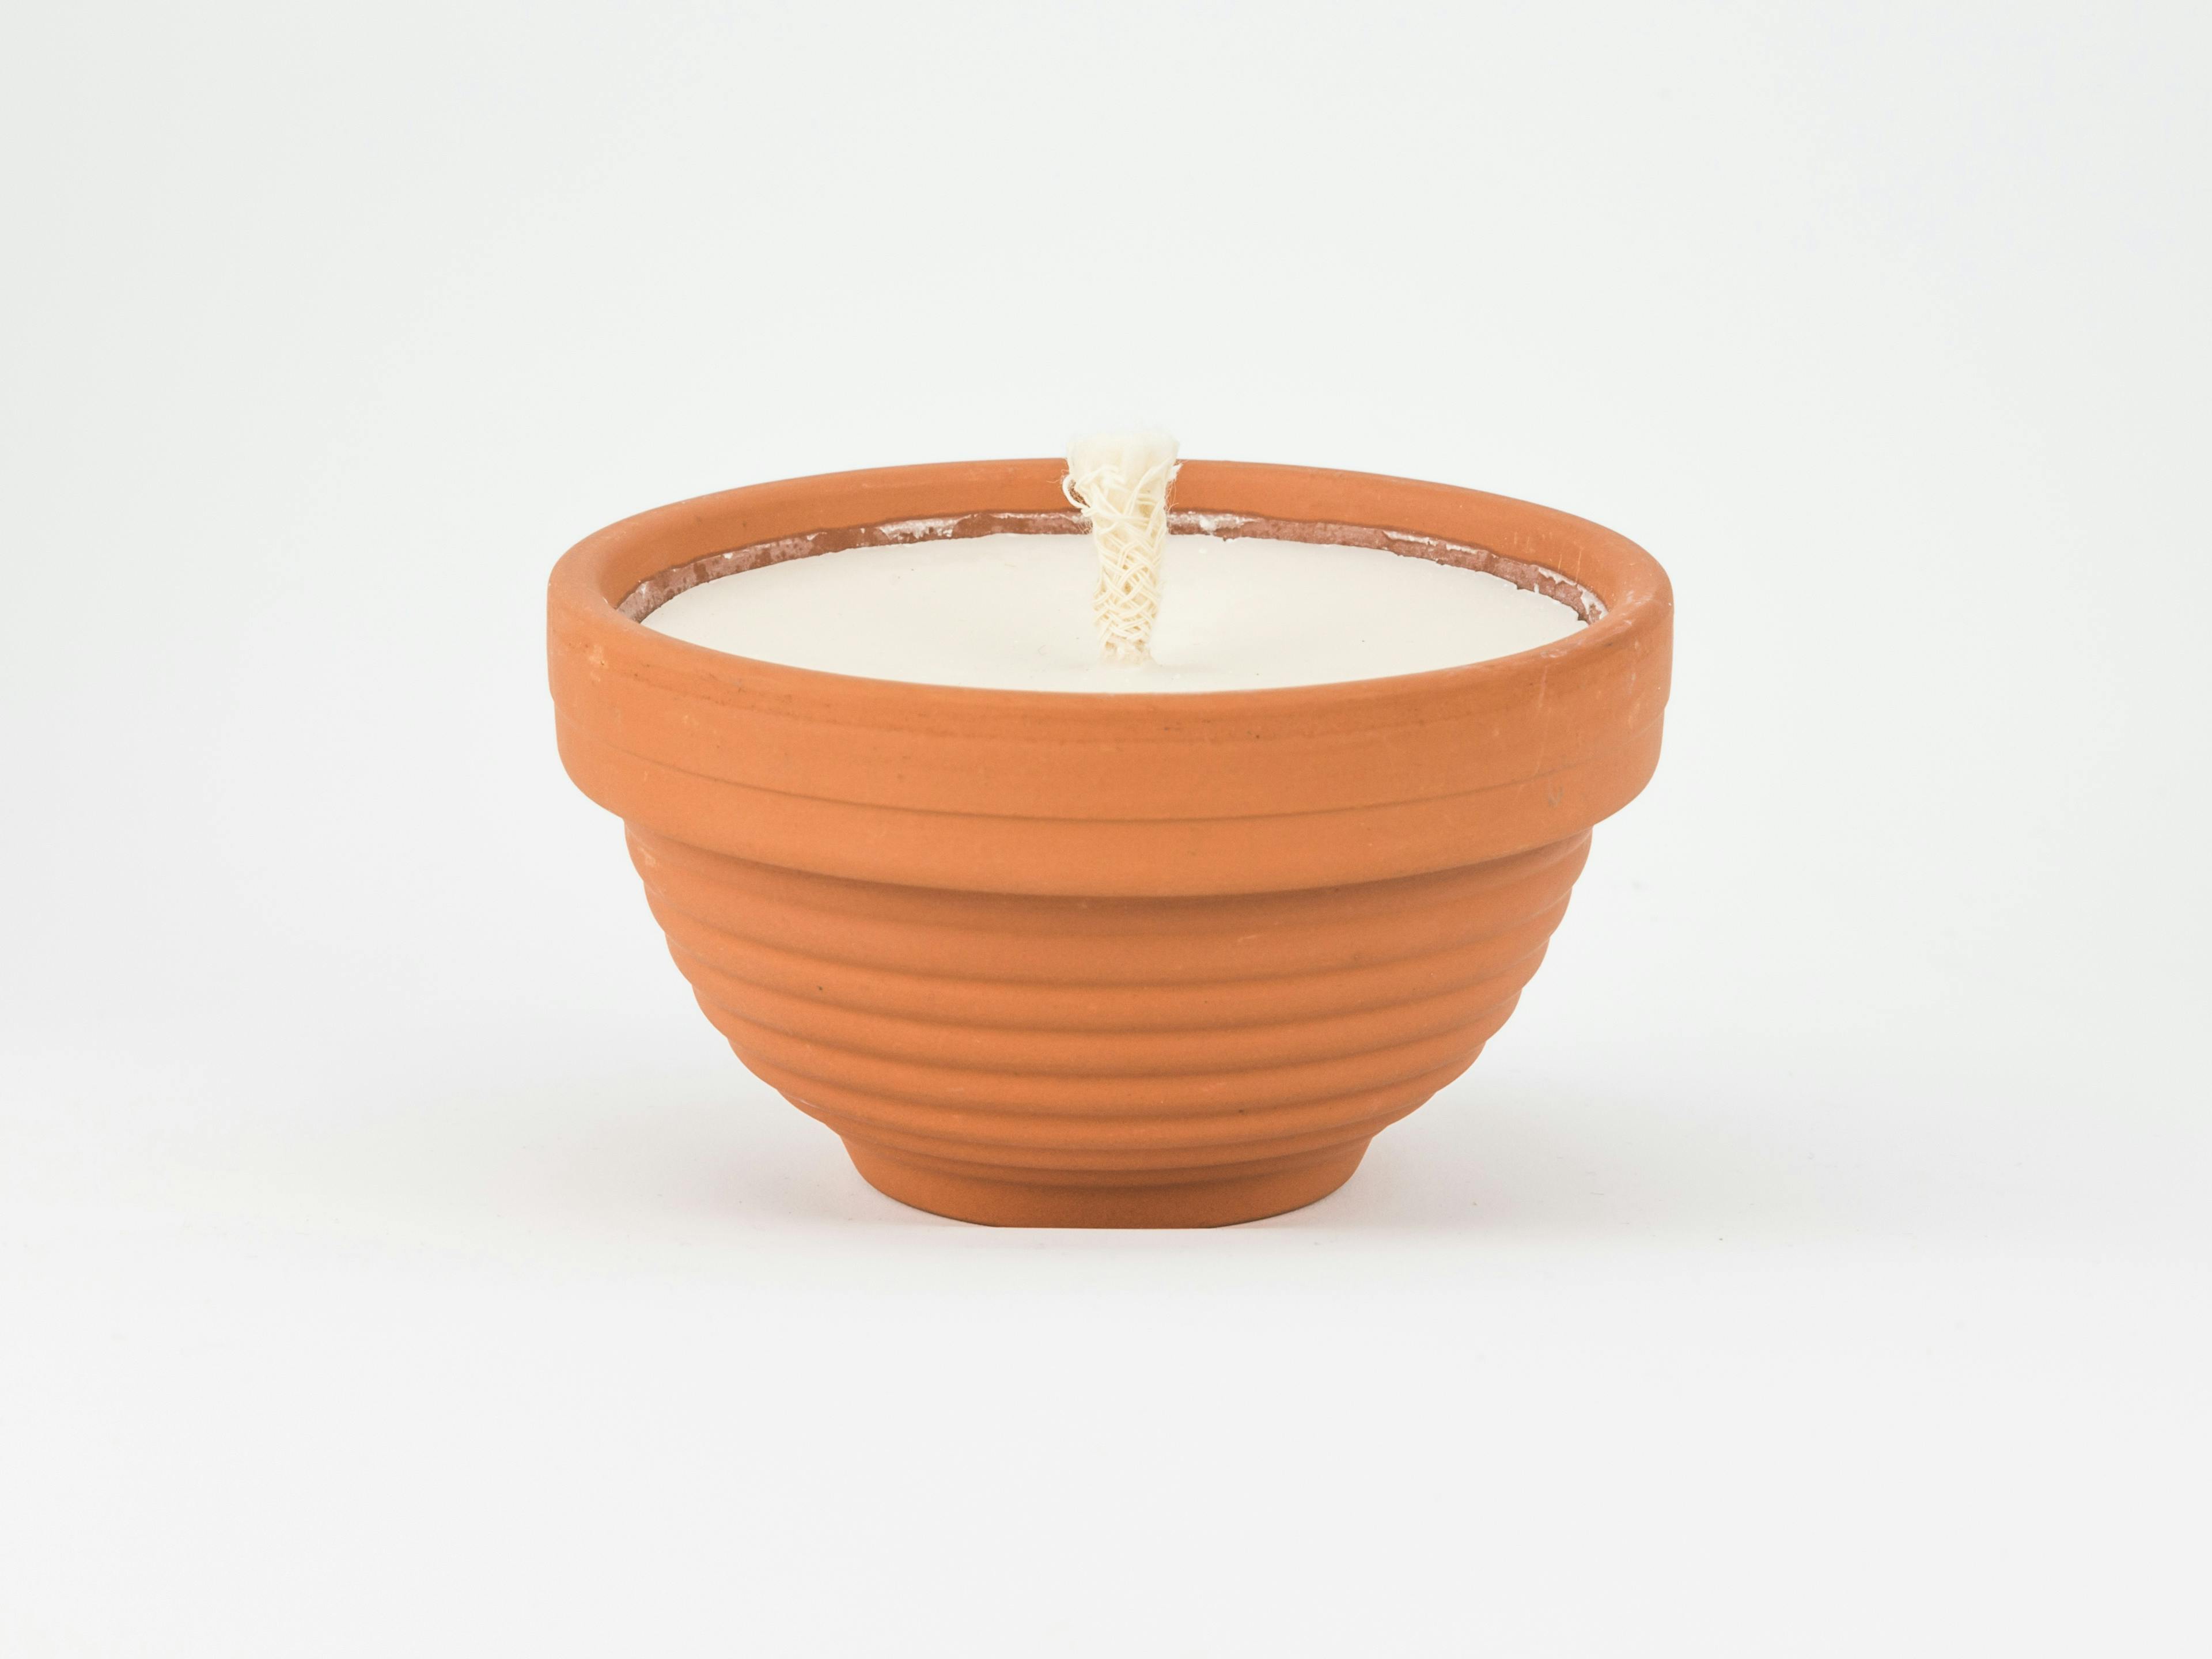 Bougies jardin petit pot en terre cuite, parfum Palo Santo, produit artisanal en vente directe en Suisse